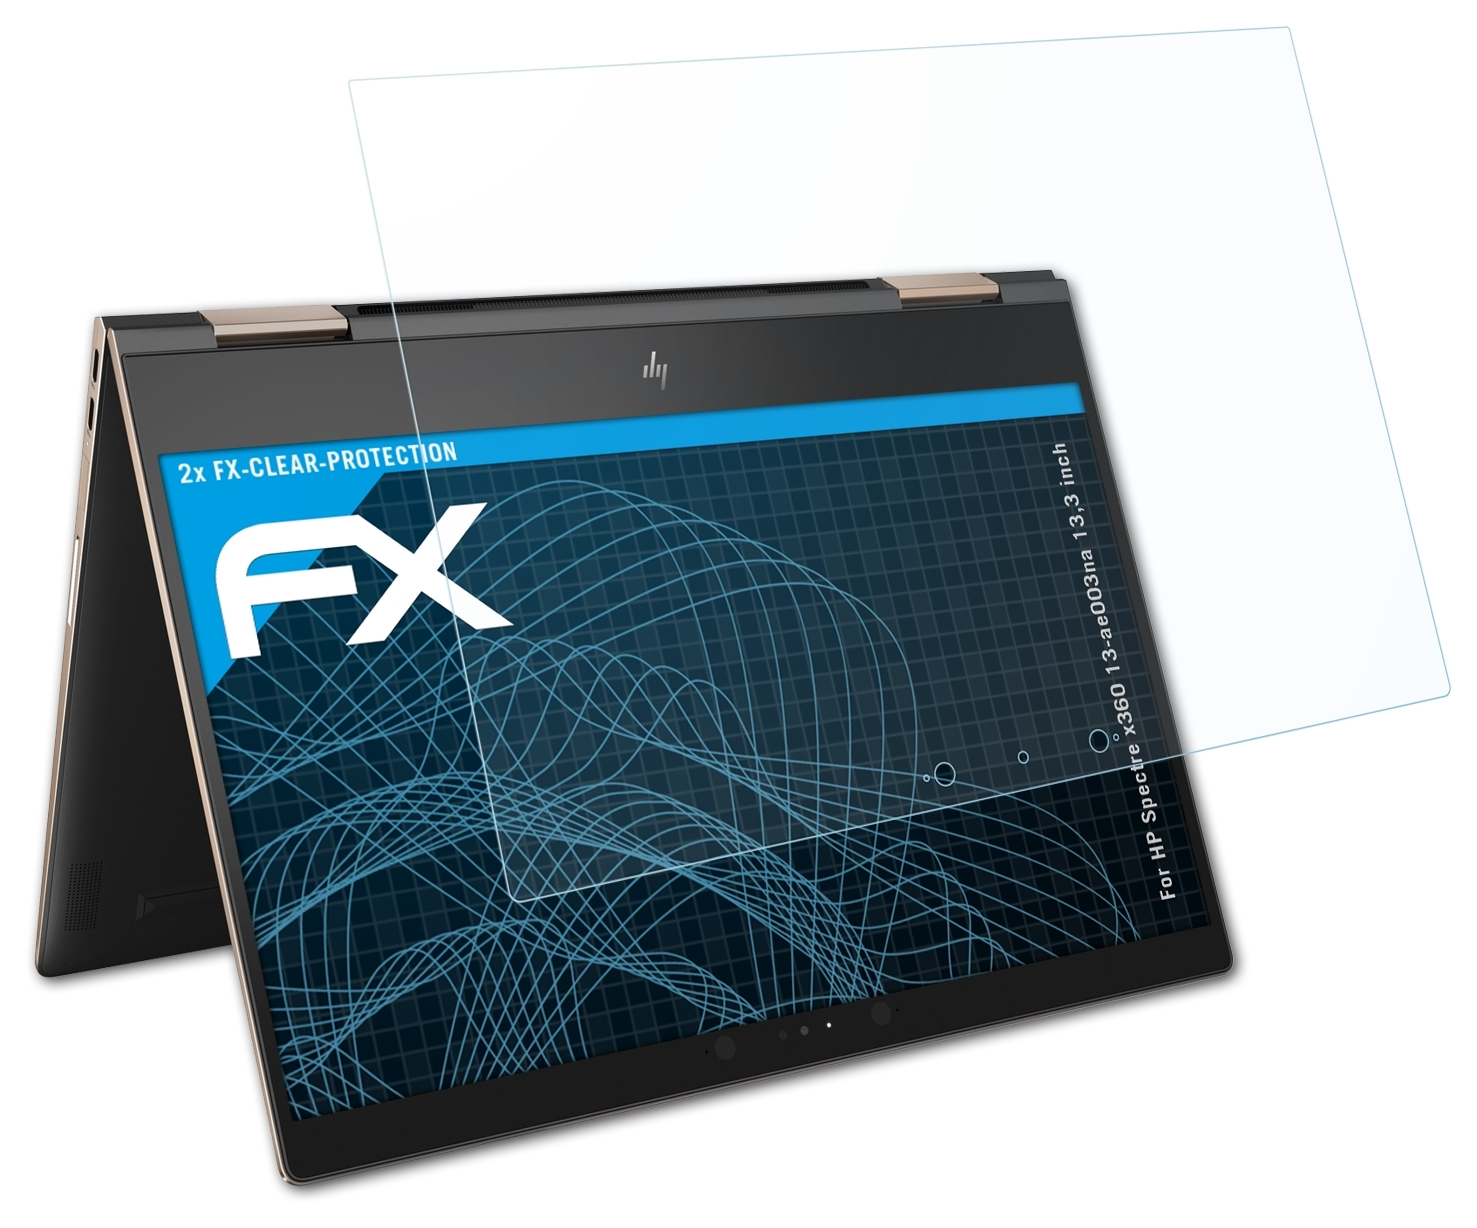 x360 (13,3 2x ATFOLIX 13-ae003na FX-Clear Displayschutz(für Spectre HP inch))